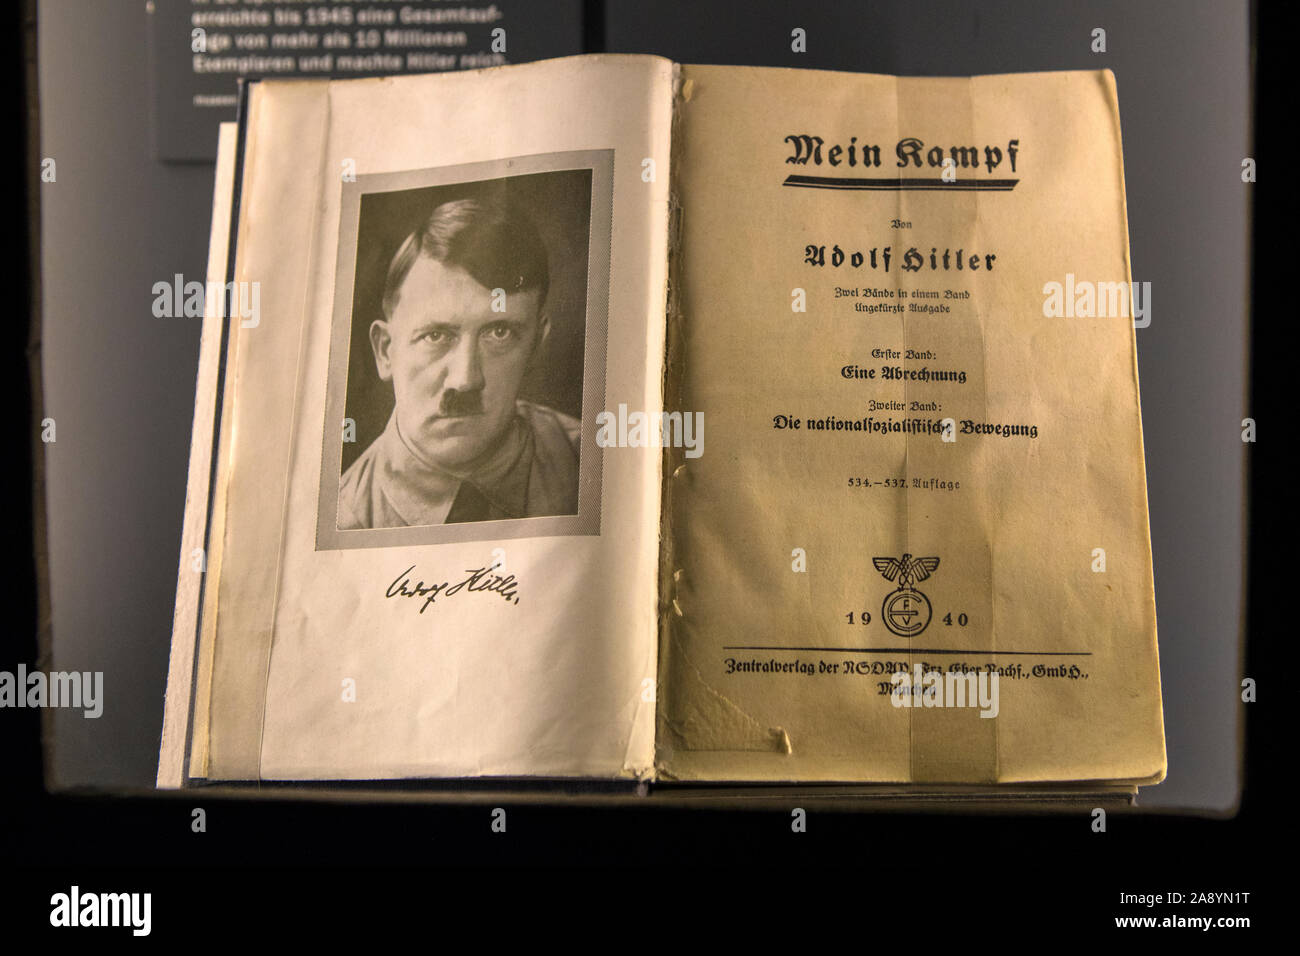 Nuremberg, Allemagne - 24 octobre 2019 : une édition originale de Mein Kampf - l'infâme livre par Adolf Hitler, à l'affiche au centre de documentation Banque D'Images